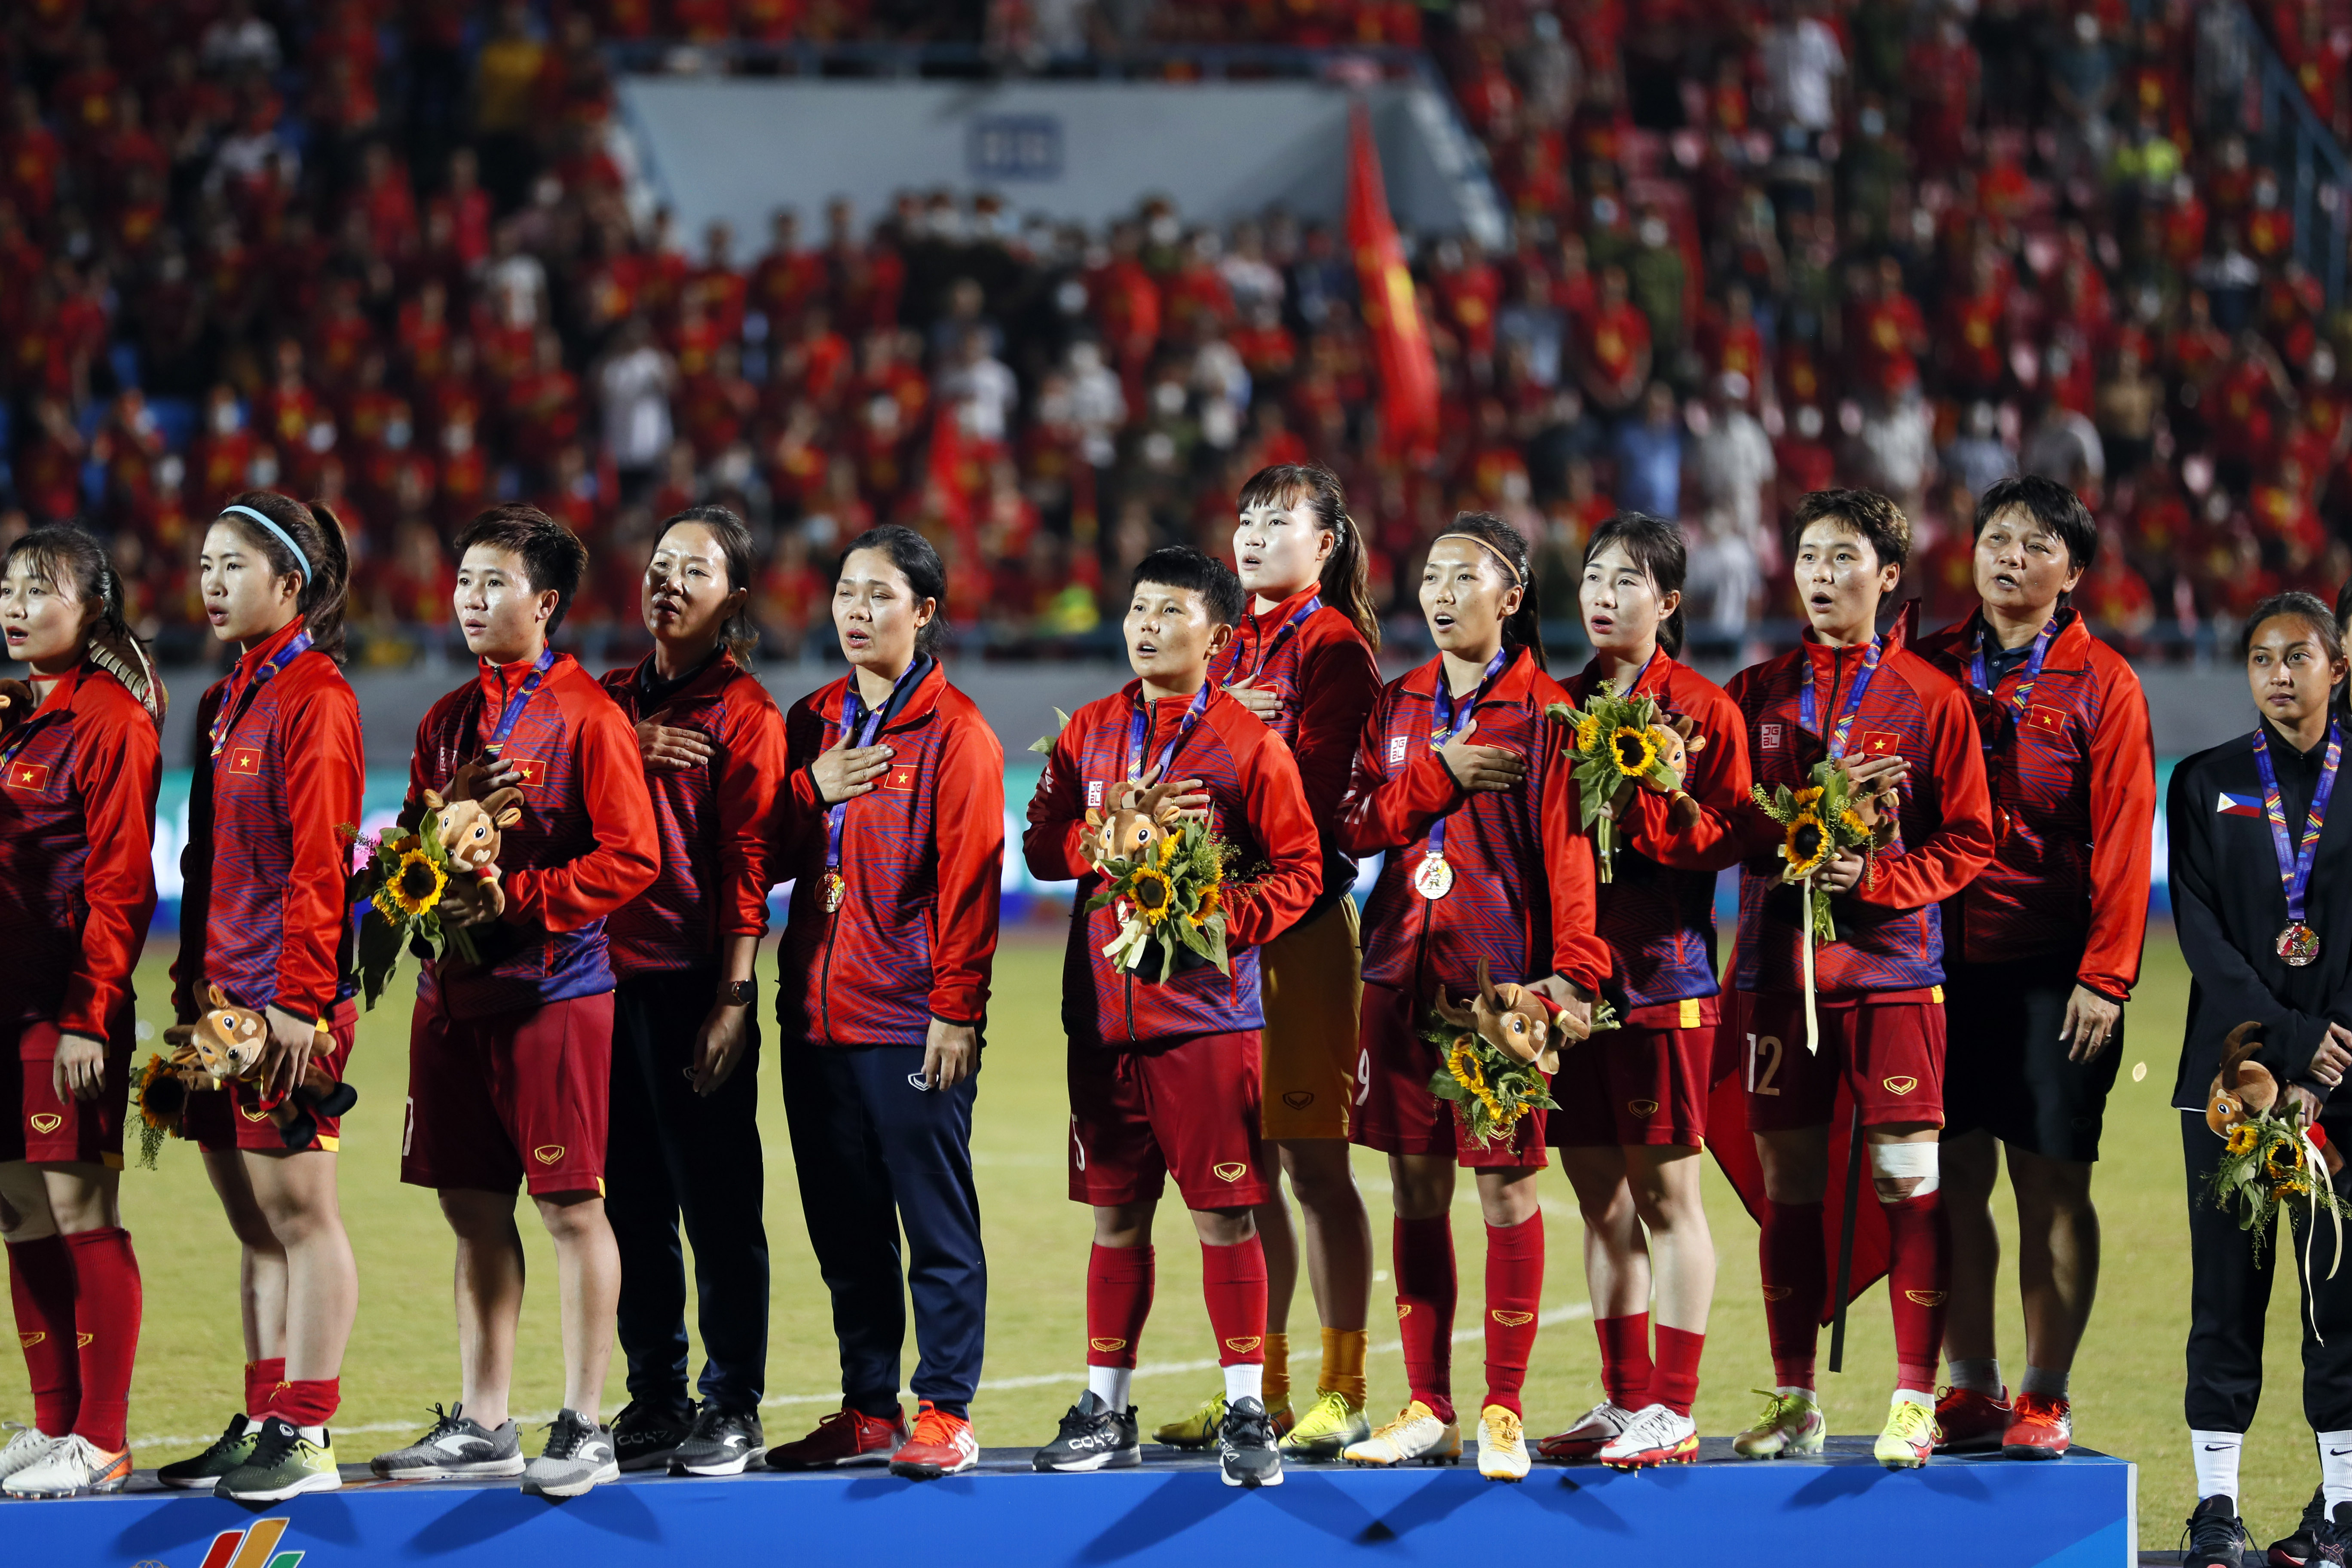 Tuyển nữ Việt Nam: Sự kiện World Cup nữ 2019 là cơ hội để tuyển nữ Việt Nam thể hiện tài năng và đẳng cấp với những đối thủ hàng đầu trên thế giới. Theo dõi những hình ảnh đặc sắc và cảm nhận sự tự hào khi đội tuyển của chúng ta xuất hiện trên sàn đấu quốc tế.